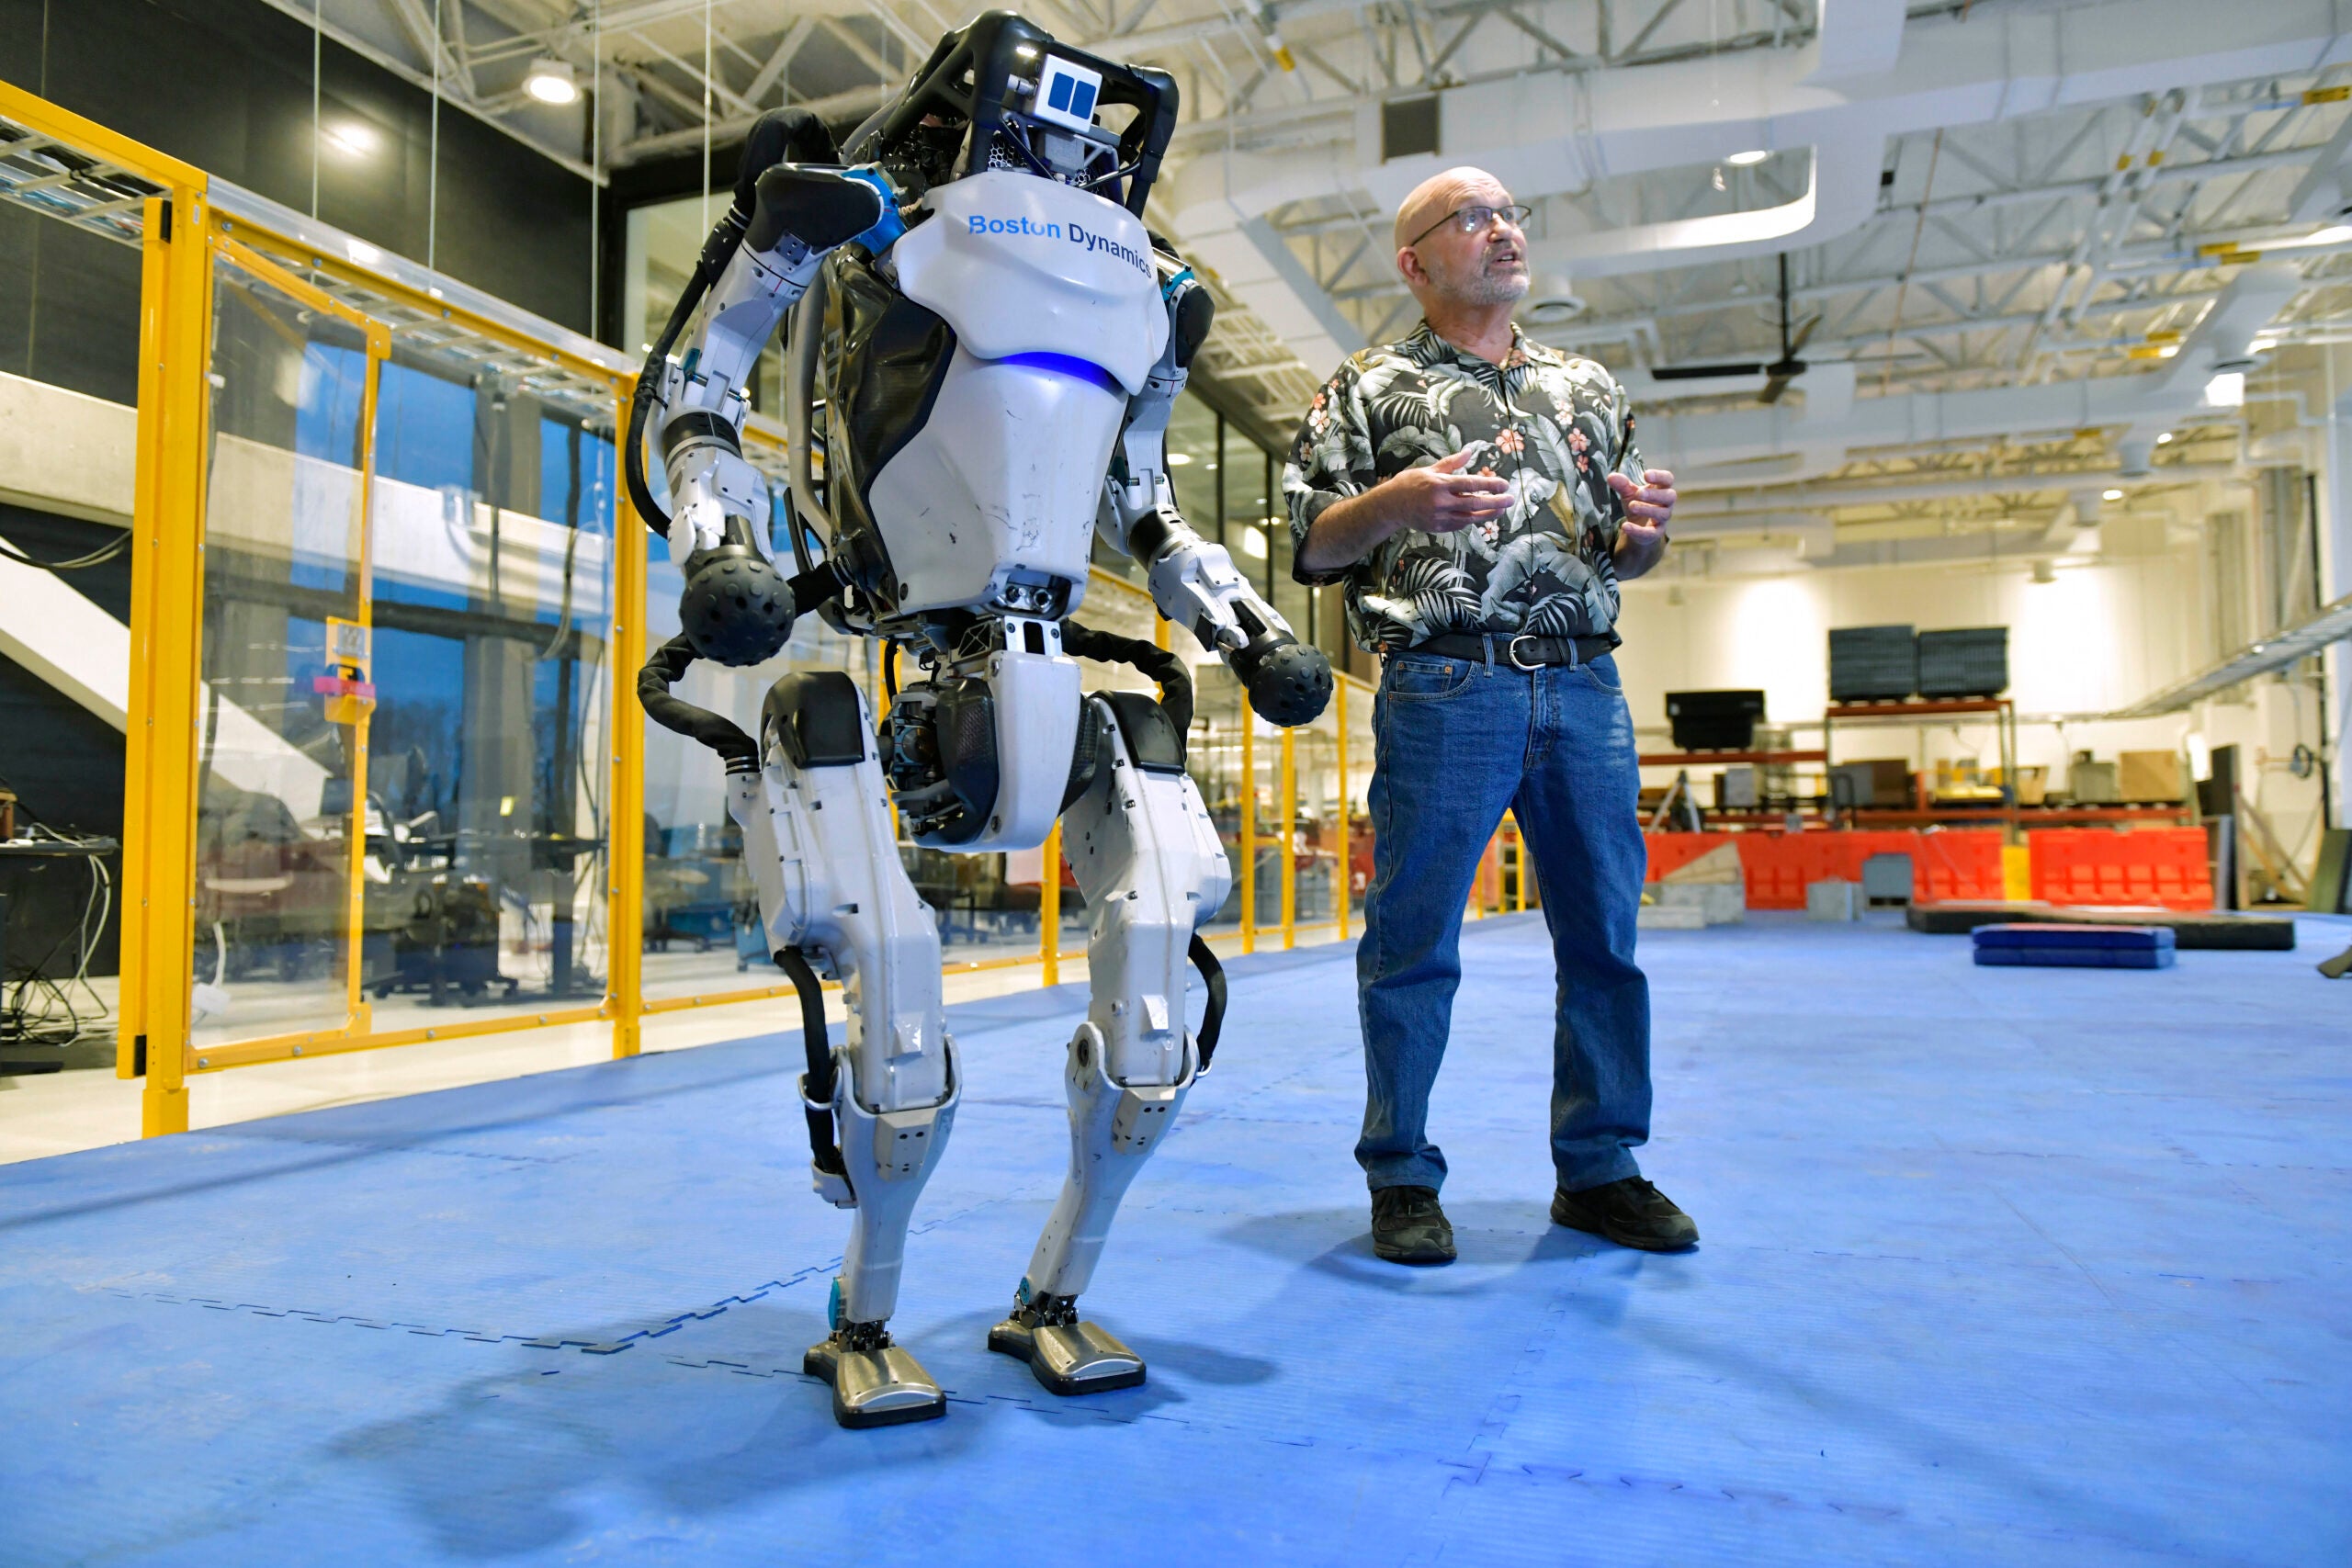 Сколько роботов в команде. Робот Бостон Динамикс. Бостон Дайнемикс робот и человек. Бостон Дайнемикс боевой робот. Роботы будущего.